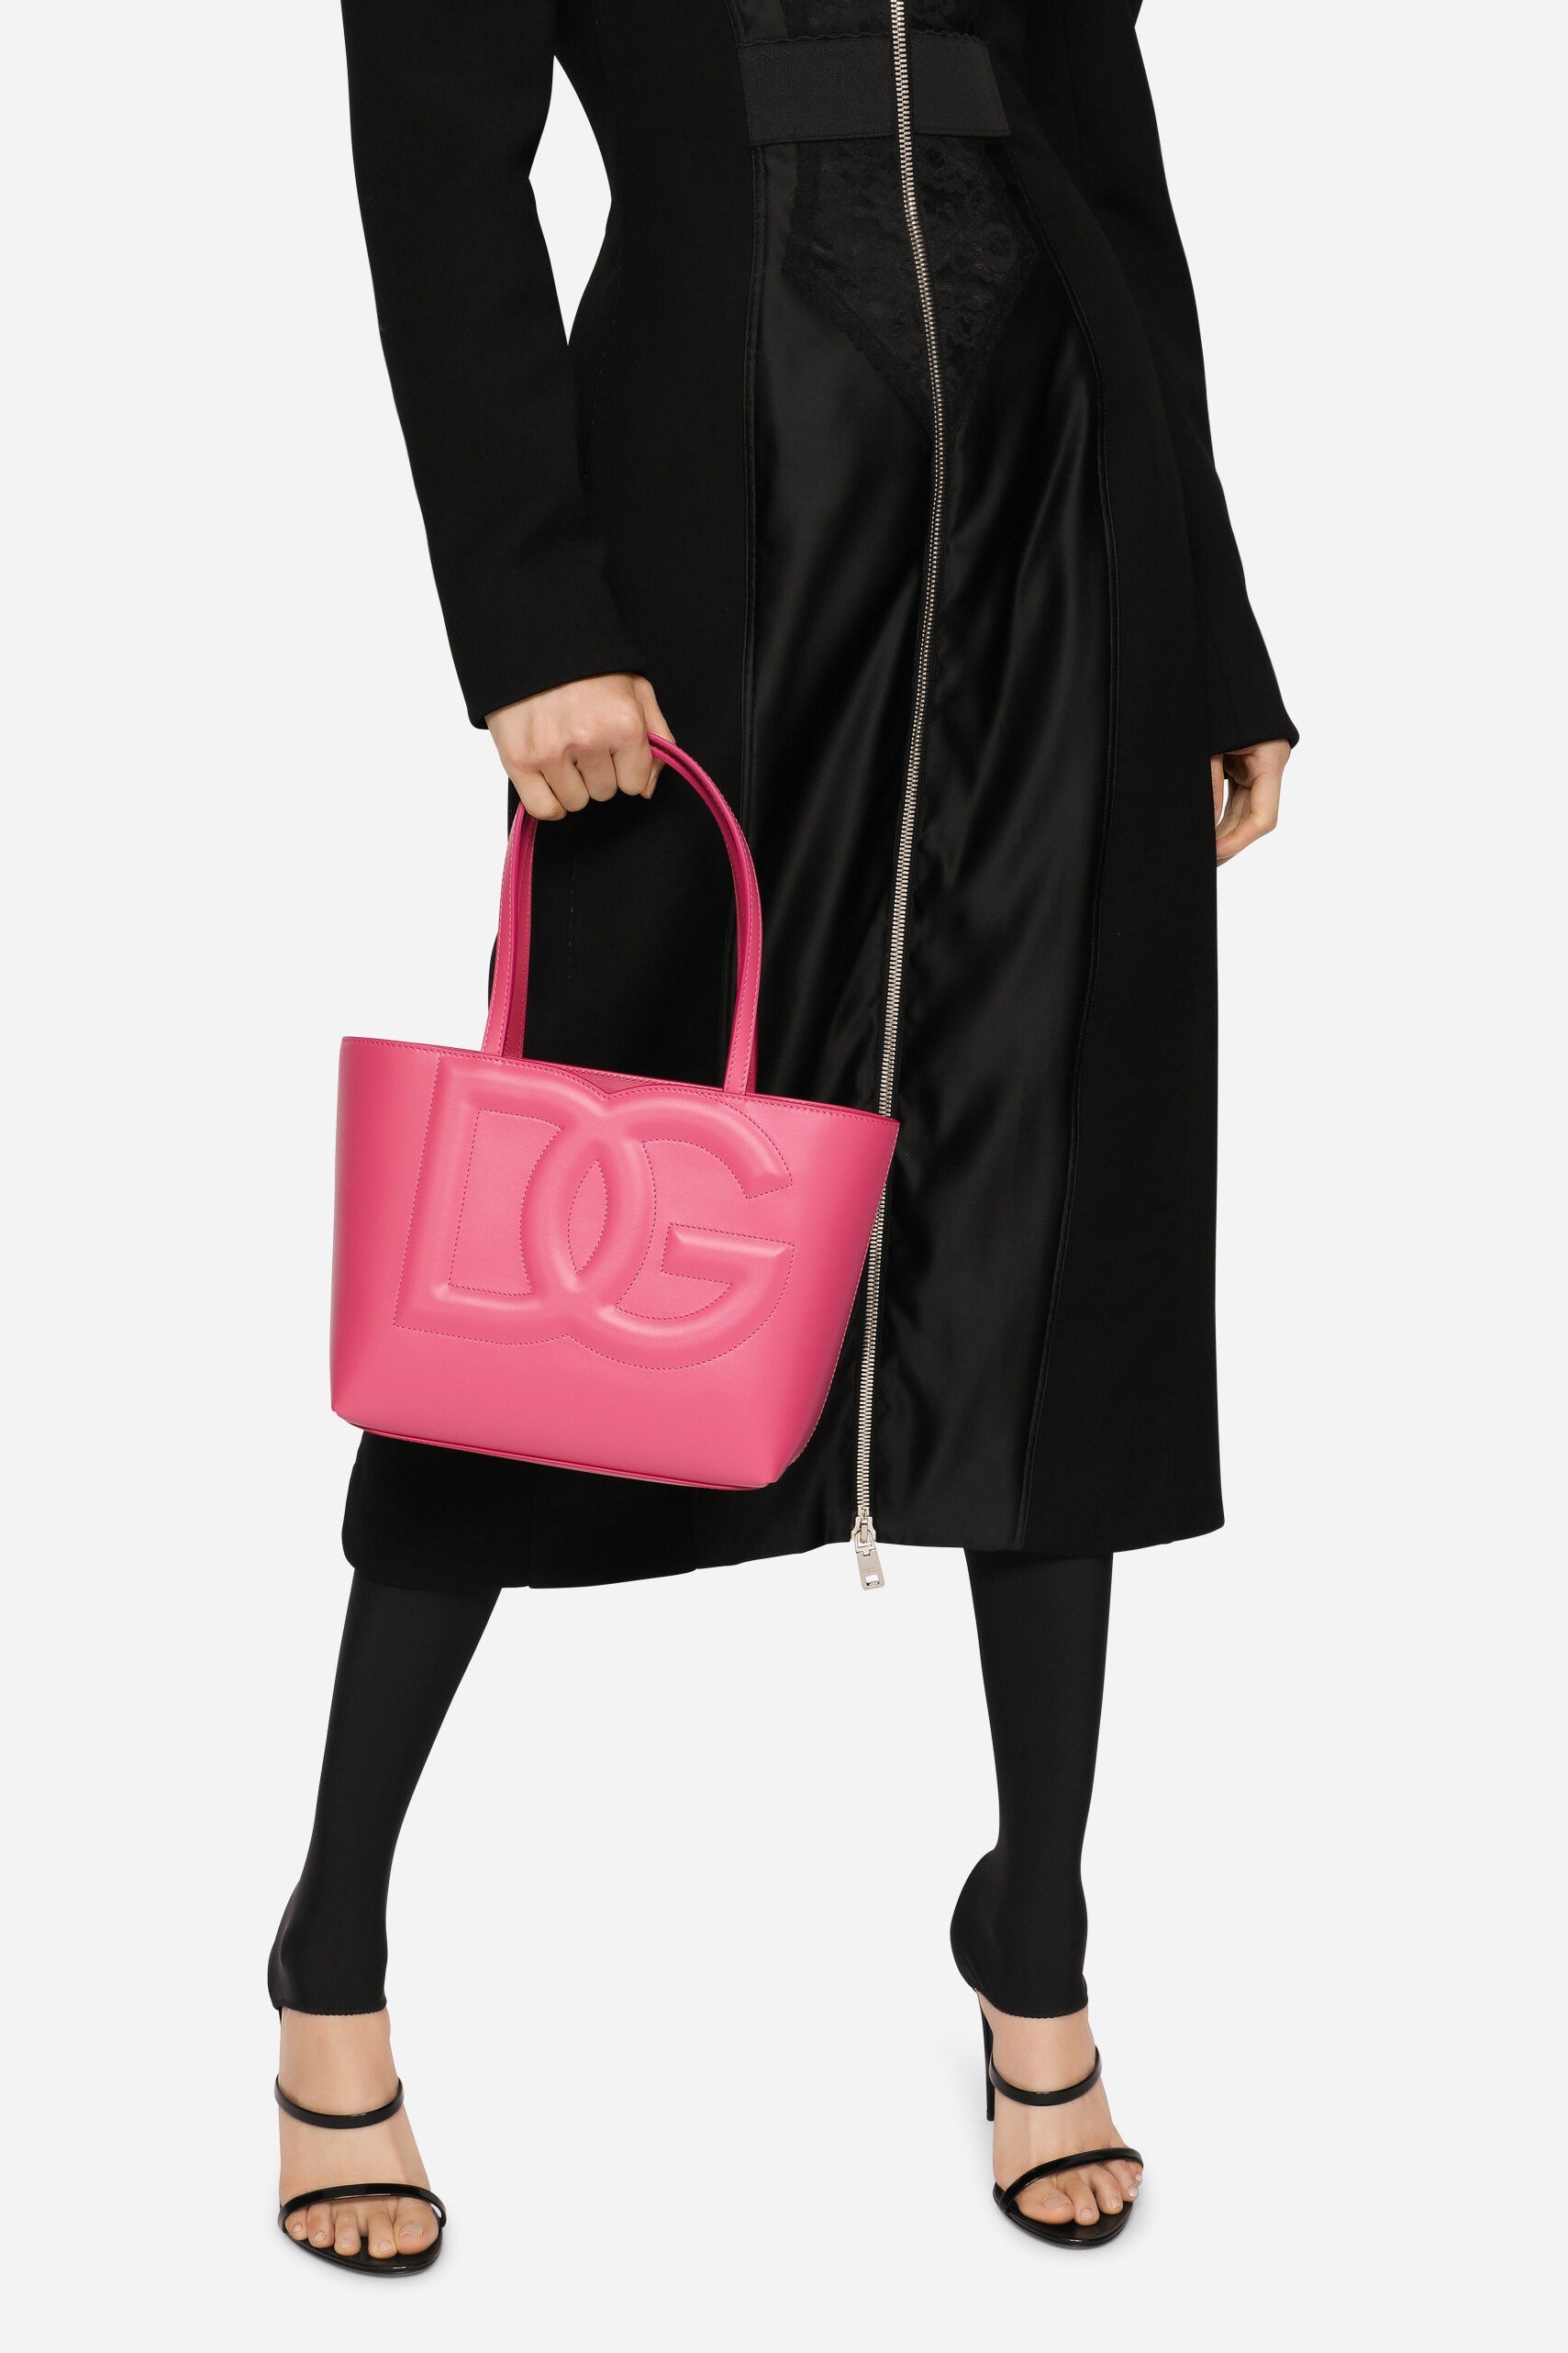 Dolce & Gabbana - SMALL CALFSKIN DG LOGO SHOPPER - Pink